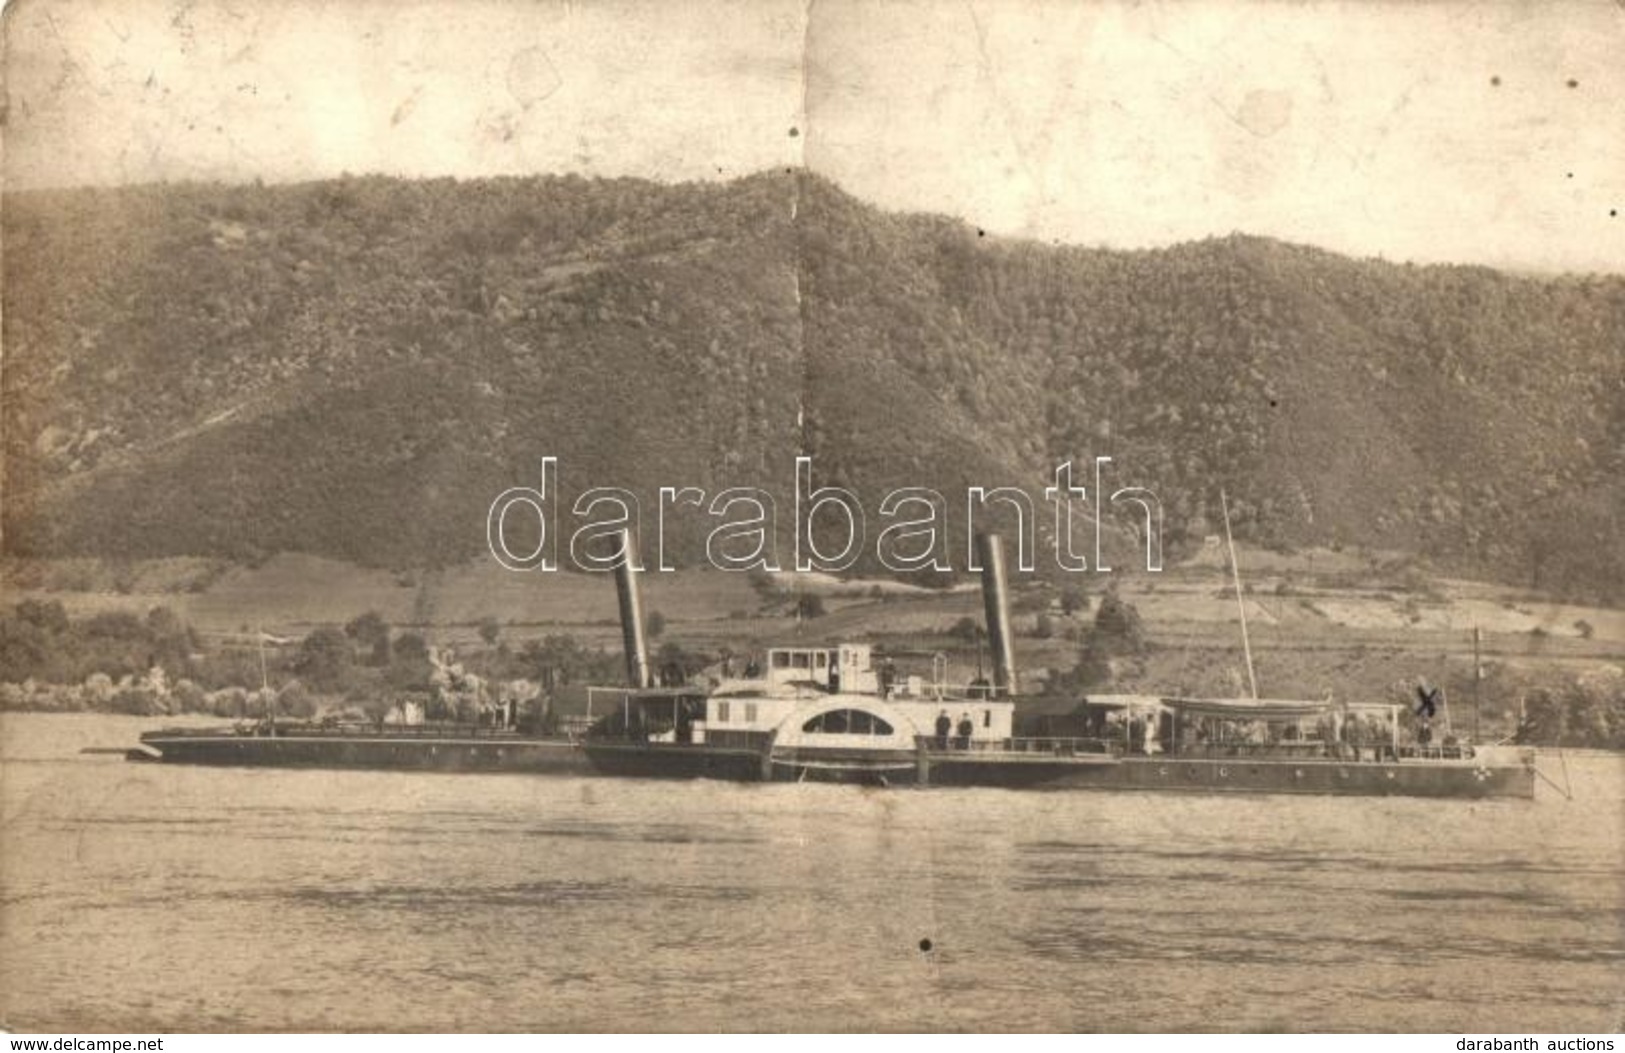 T3/T4 1929 Orsova, Dániel Vontató és Szállító Gőzhajó / Towing And Carrying Steamship, A. Renyé Photo (fa) - Zonder Classificatie